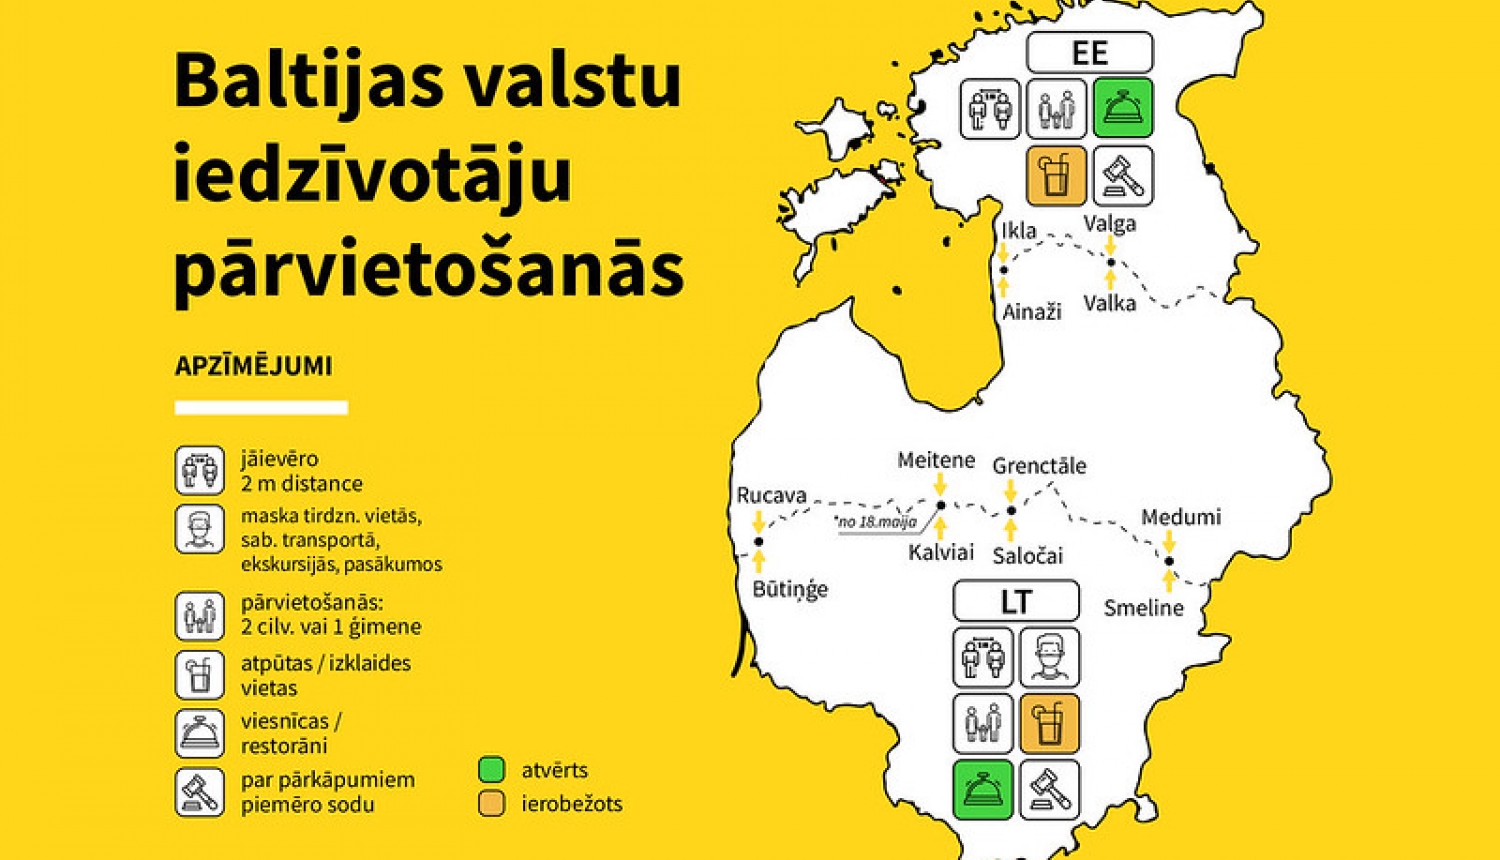 Latvijas valstspiederīgo iespējas pārvietoties Baltijas valstīs (papildināts)